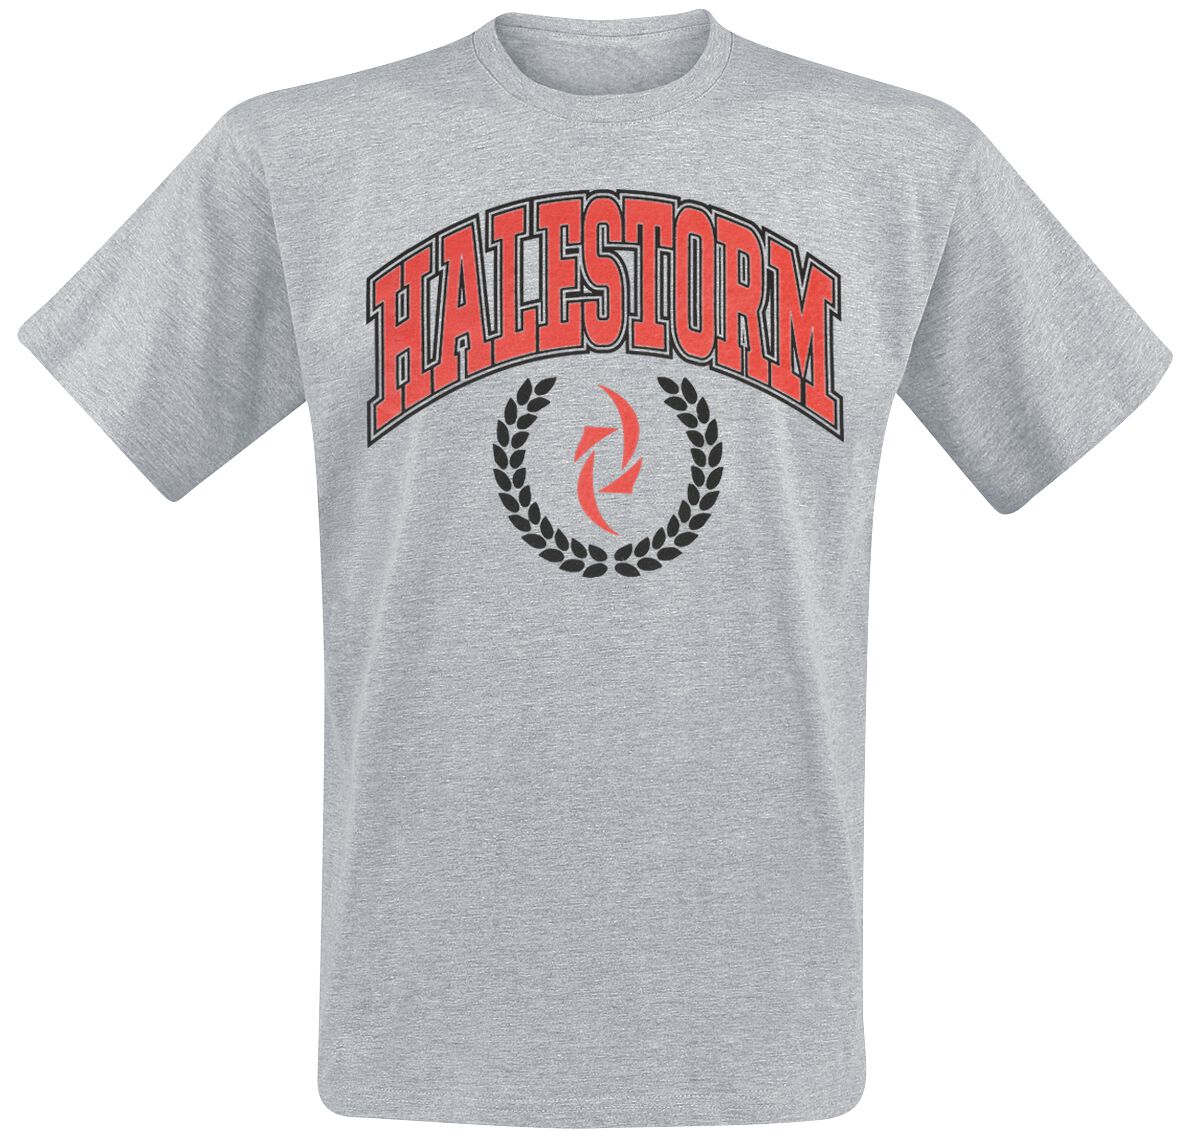 Halestorm T-Shirt - Varsity Logo - S bis XL - für Männer - Größe XL - grau meliert  - Lizenziertes Merchandise!